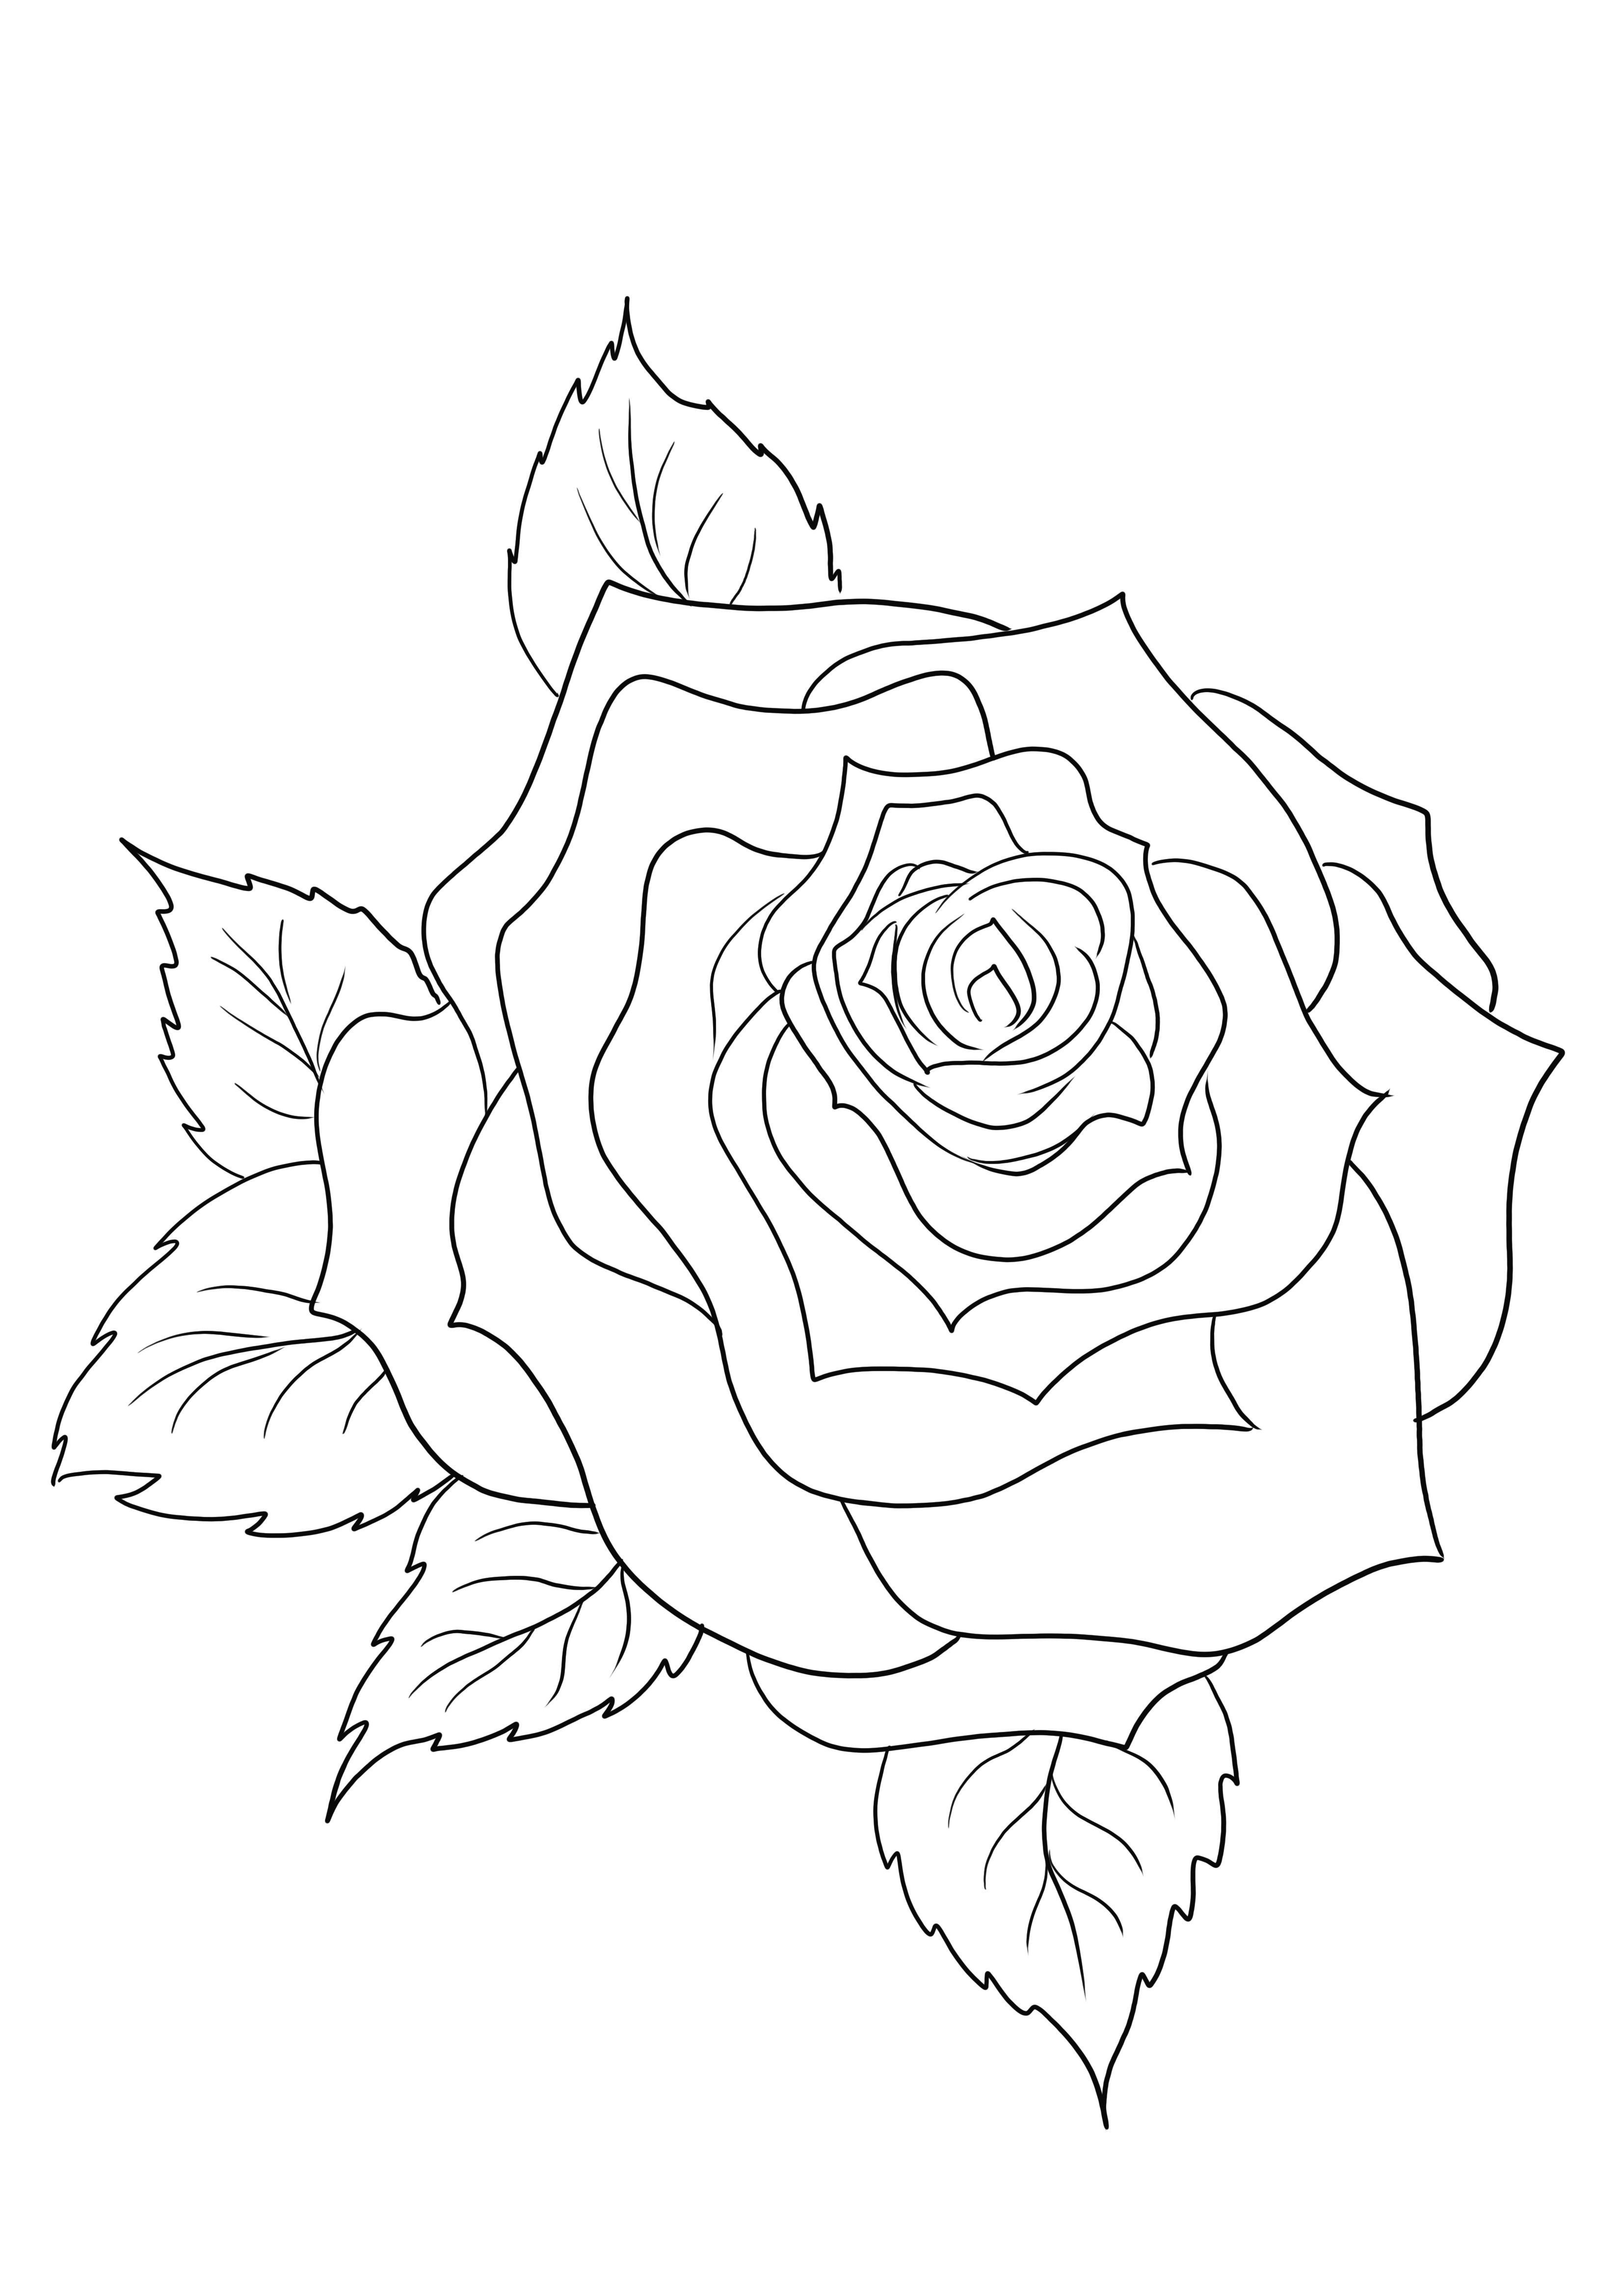 Piękne po prostu pokolorować arkusz róży do wydrukowania lub pobrania